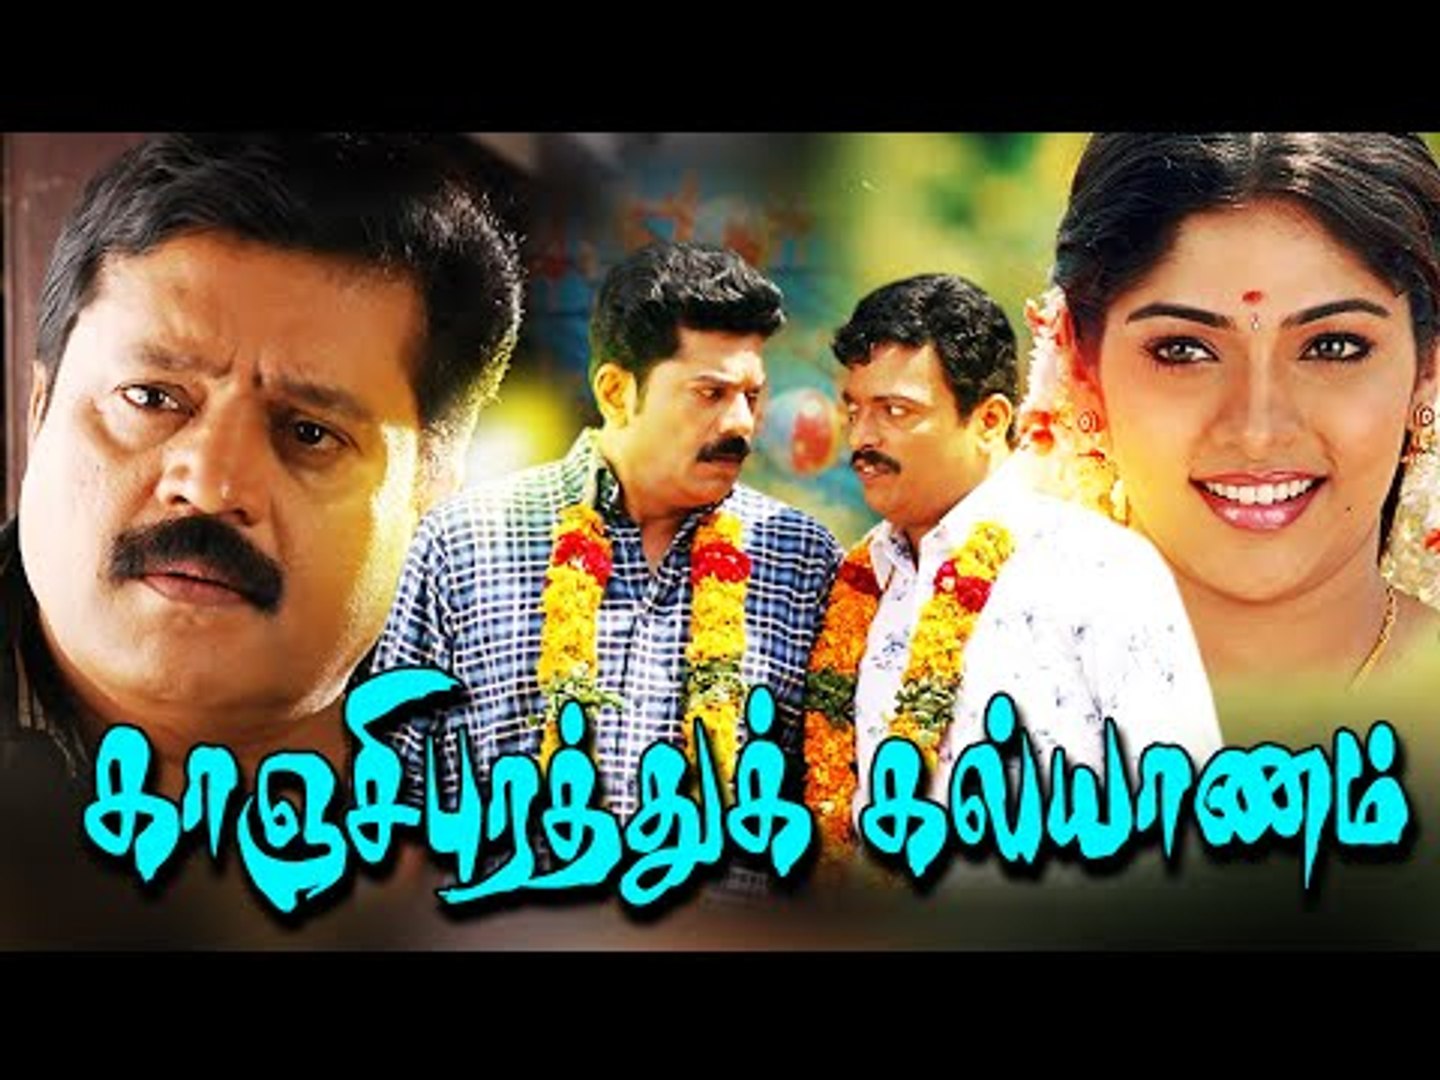 Tamil New Movies 2016 Full Movie | Kancheepurathu Kalyanam | Tamil Dubbed Comedy Movies Full Movies